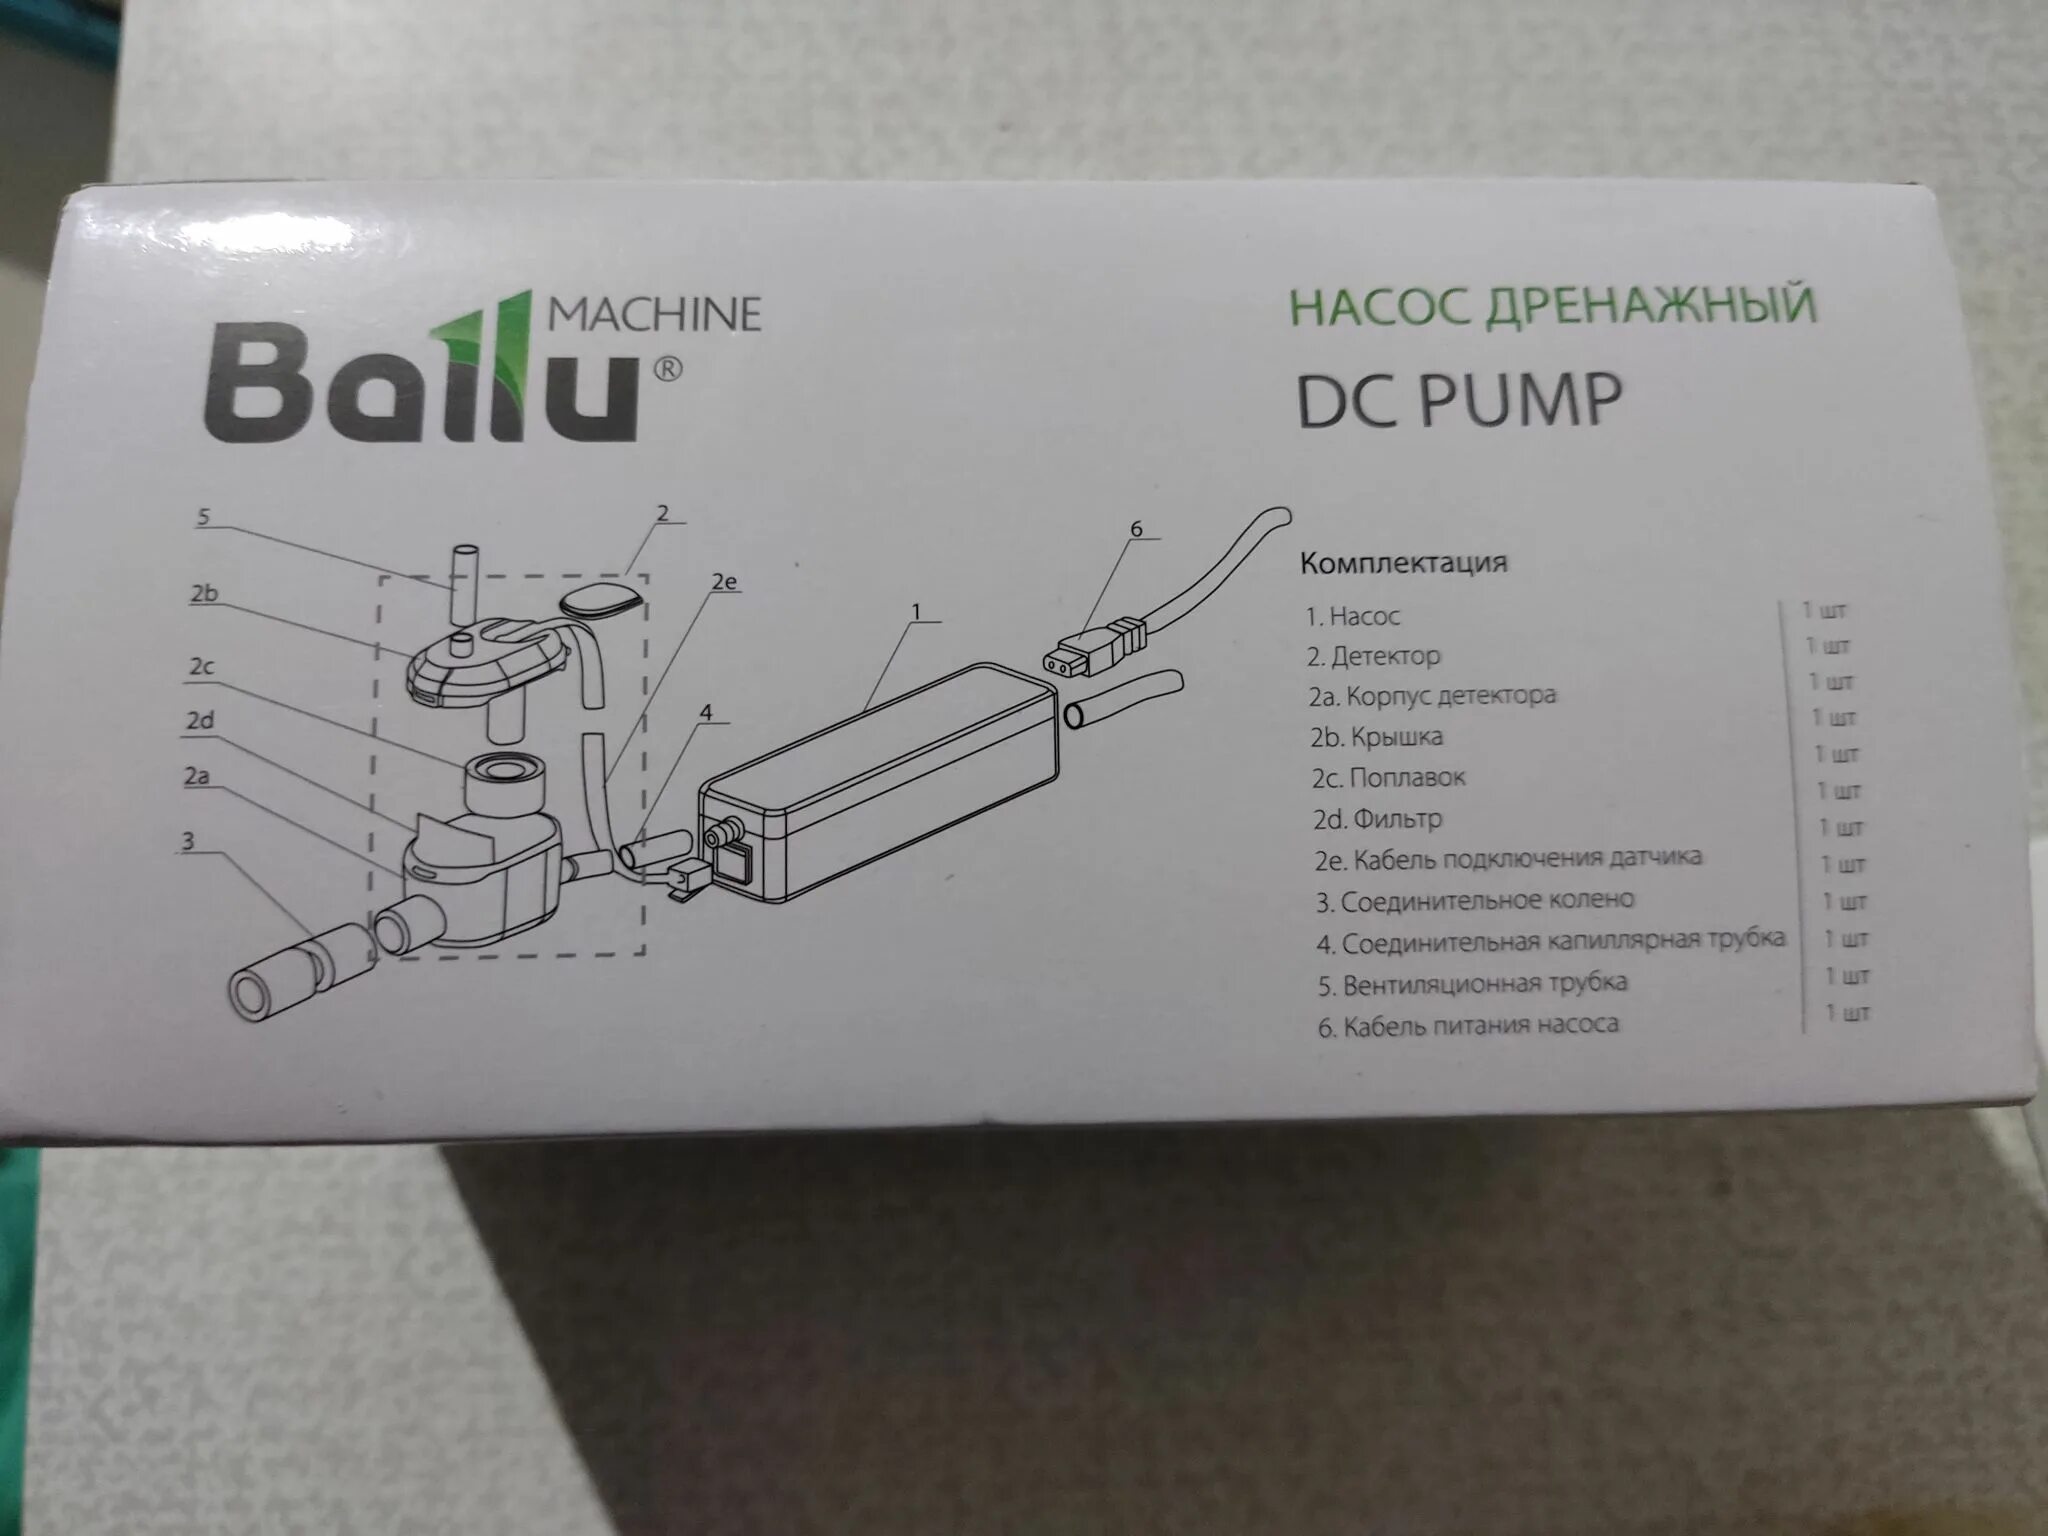 Ballu machine dс pump 18 л ч. Помпа Ballu Machine DC Pump (18л/ч). Насос дренажный (помпа) Ballu Machine DС Pump (проточный, 18 л/ч). Насос дренажный Ballu Machine DС Pump. Ballu Machine DС Pump проточный 18 л/ч.